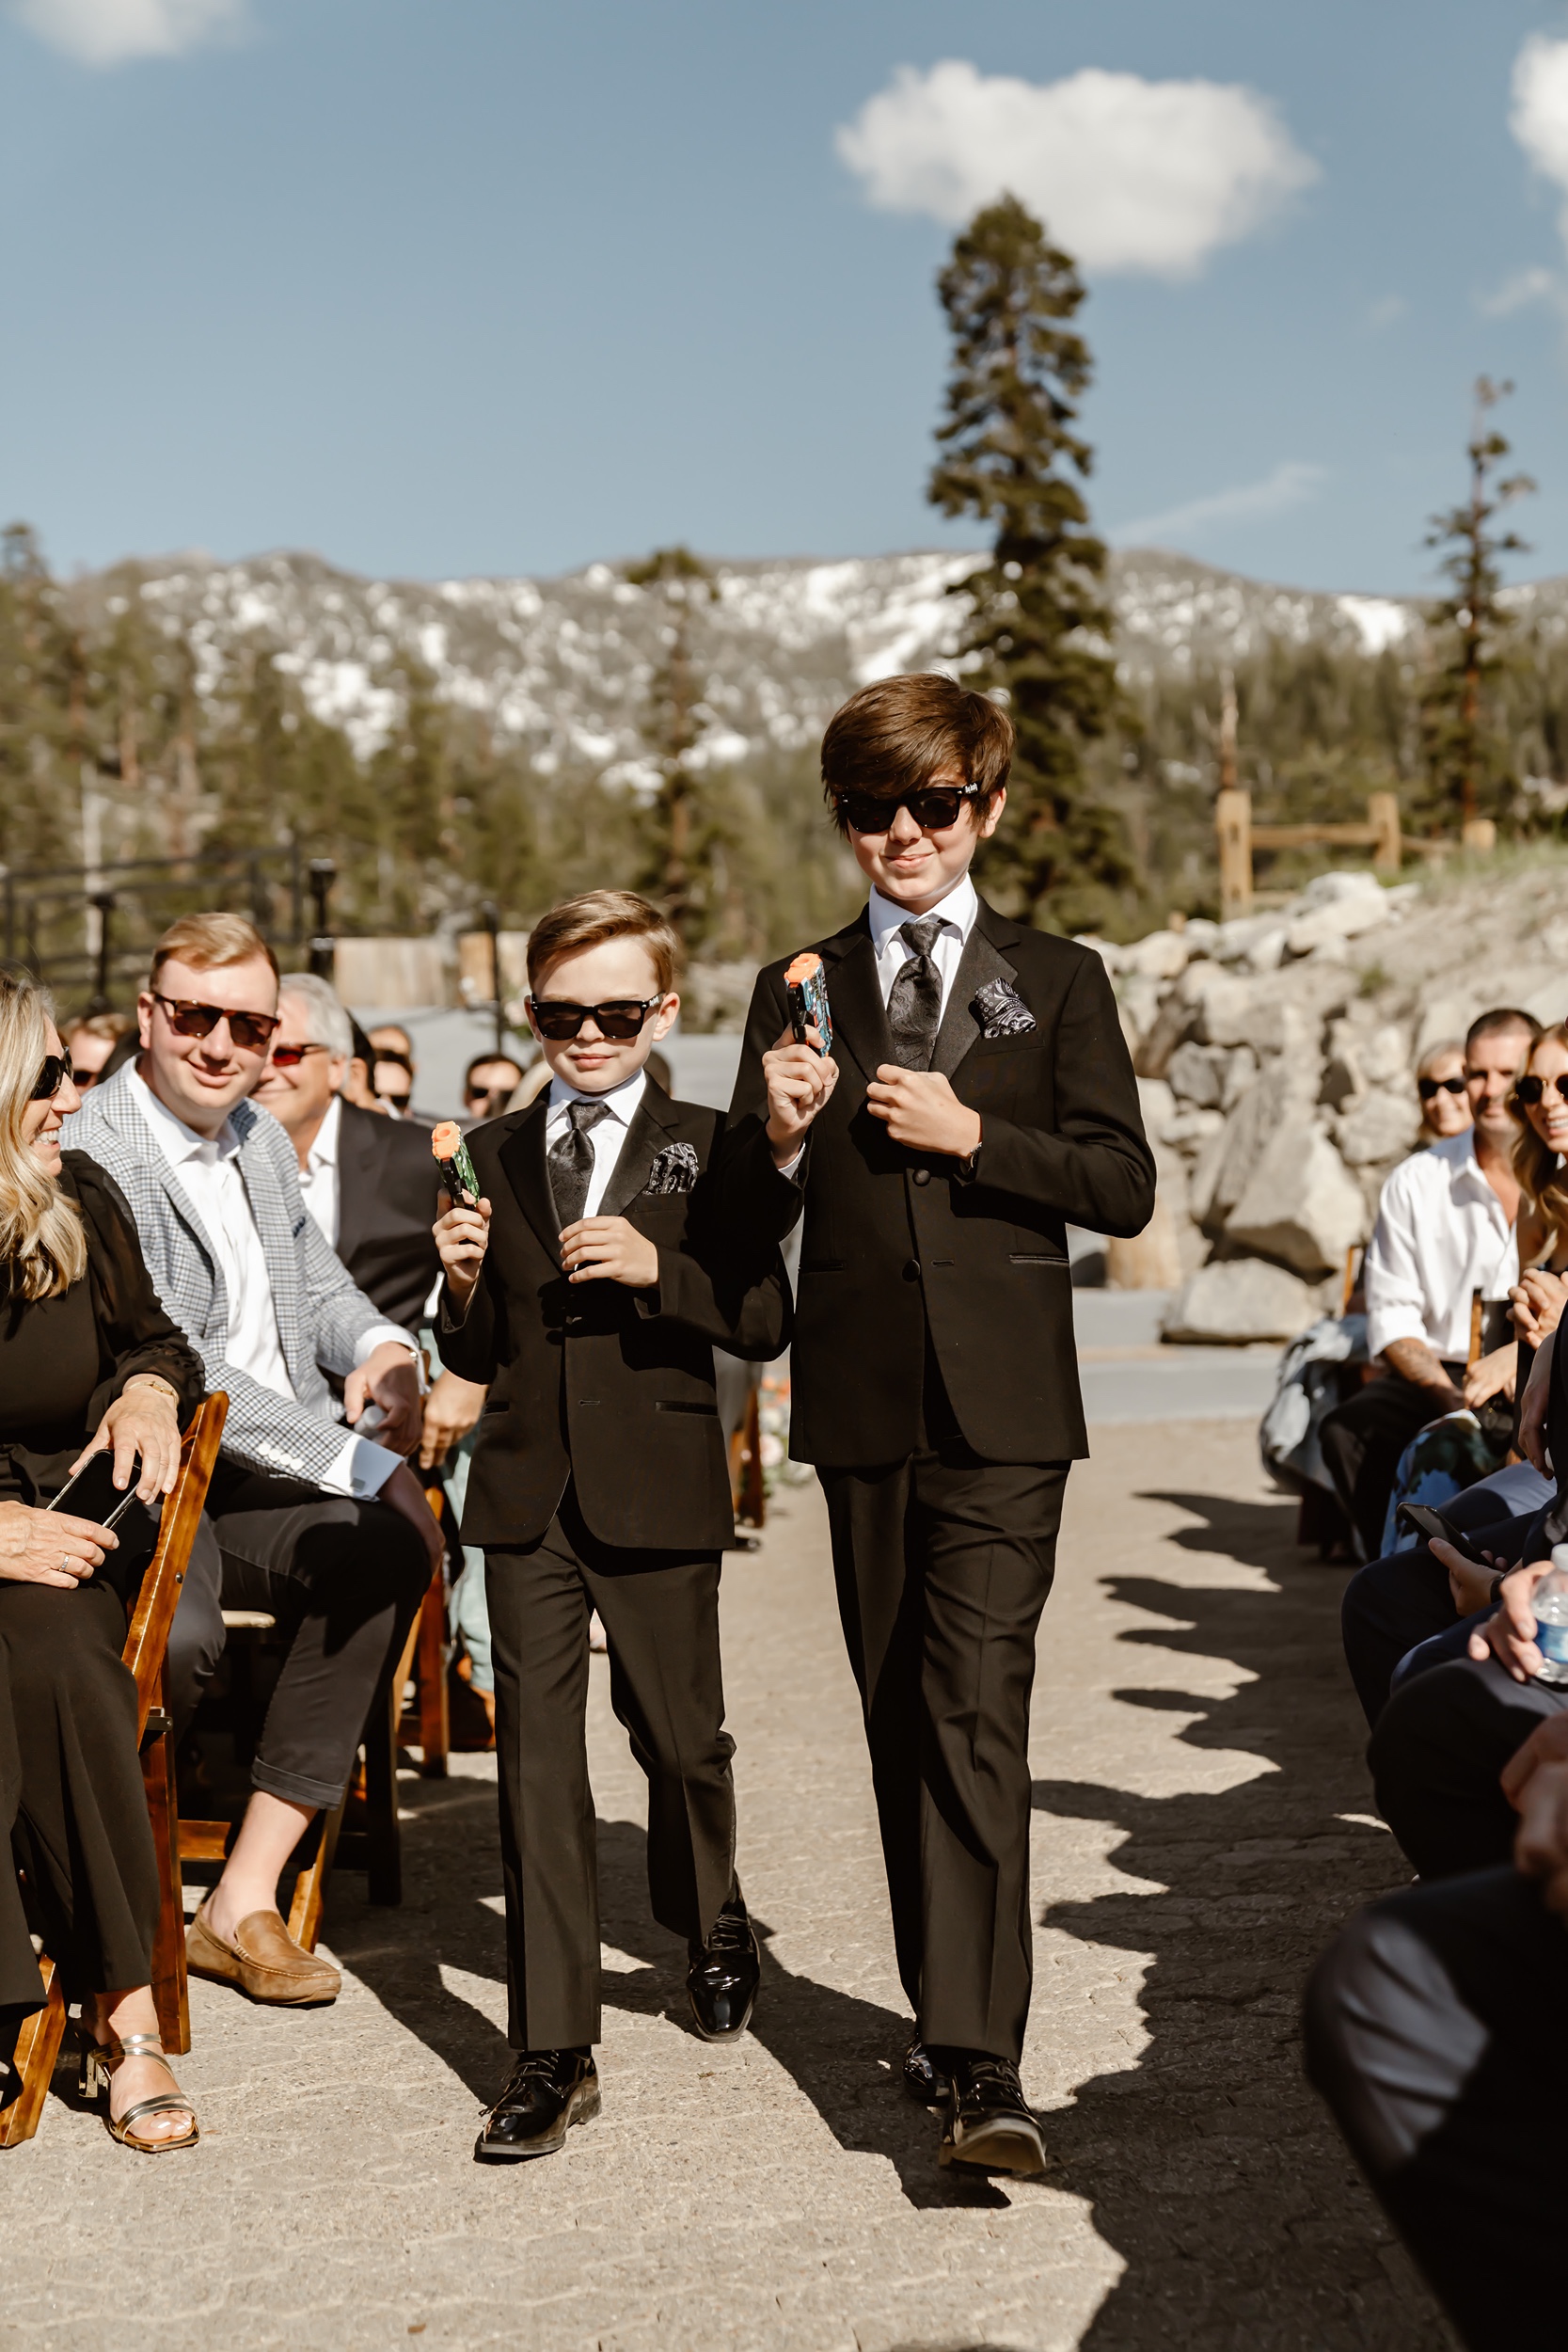 Heavenly Ski Resort wedding ceremony